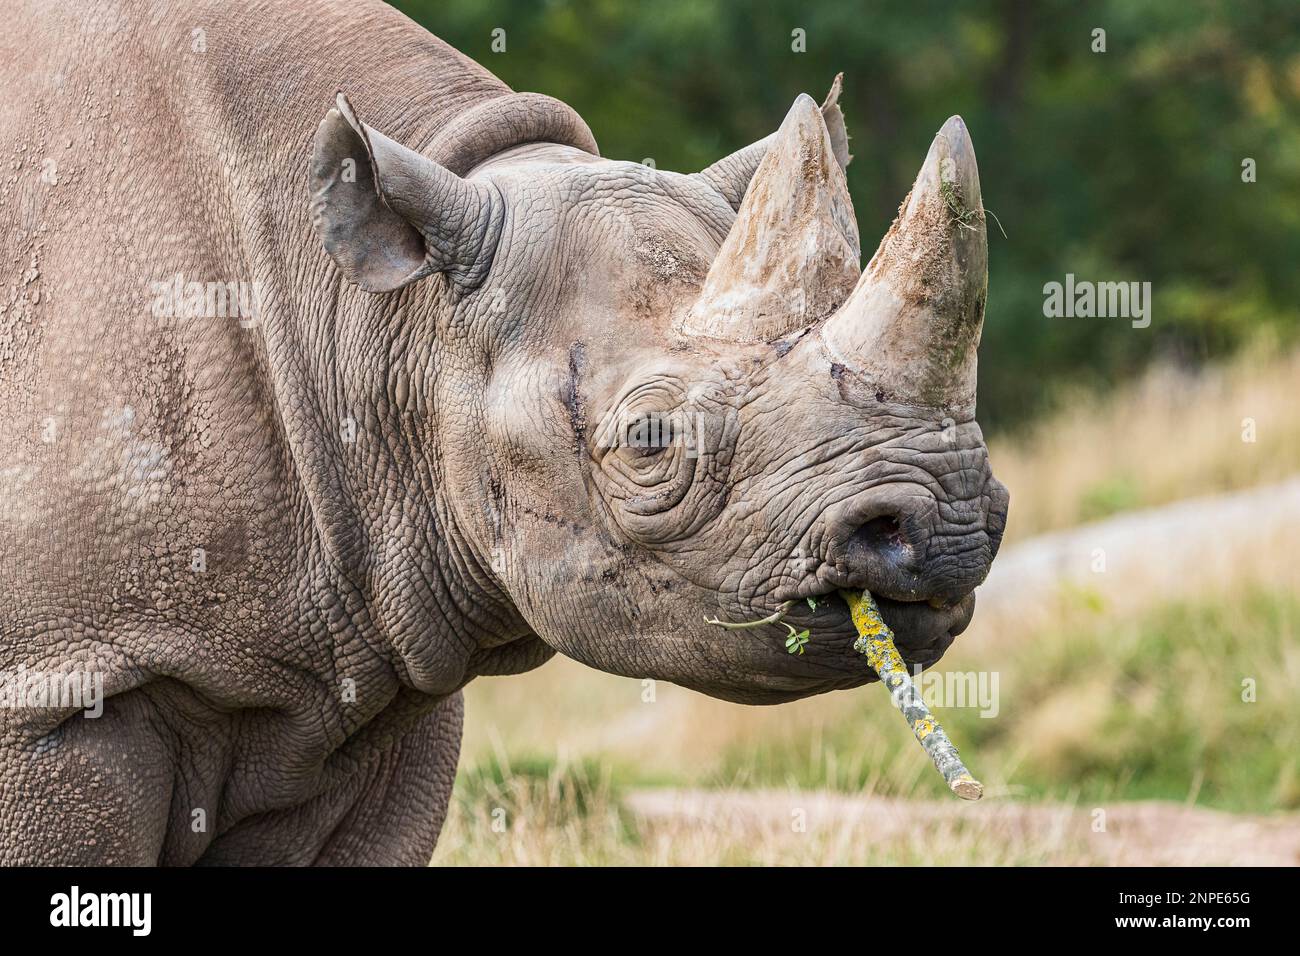 Primo piano di un rinoceronte nero che mastica un bastone nella prateria in uno zoo del Cheshire. Foto Stock